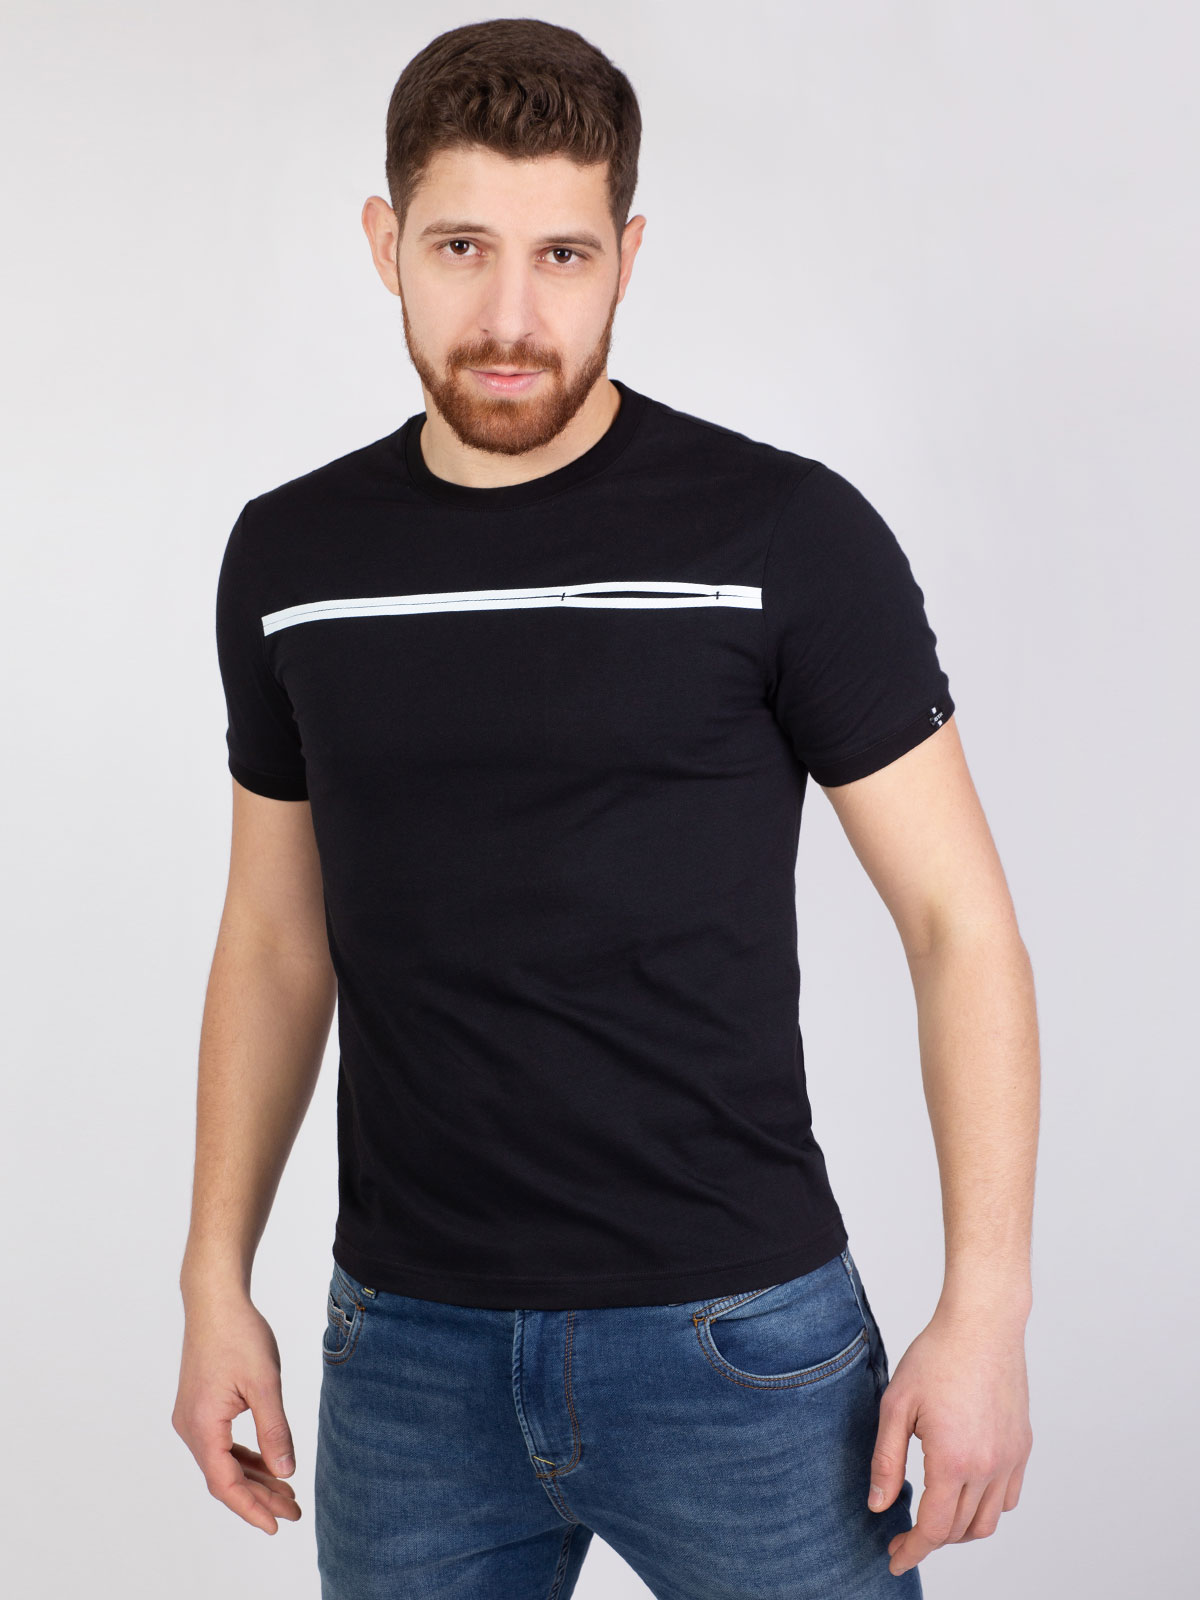 Black tshirt with white print line - 96392 € 12.37 img4